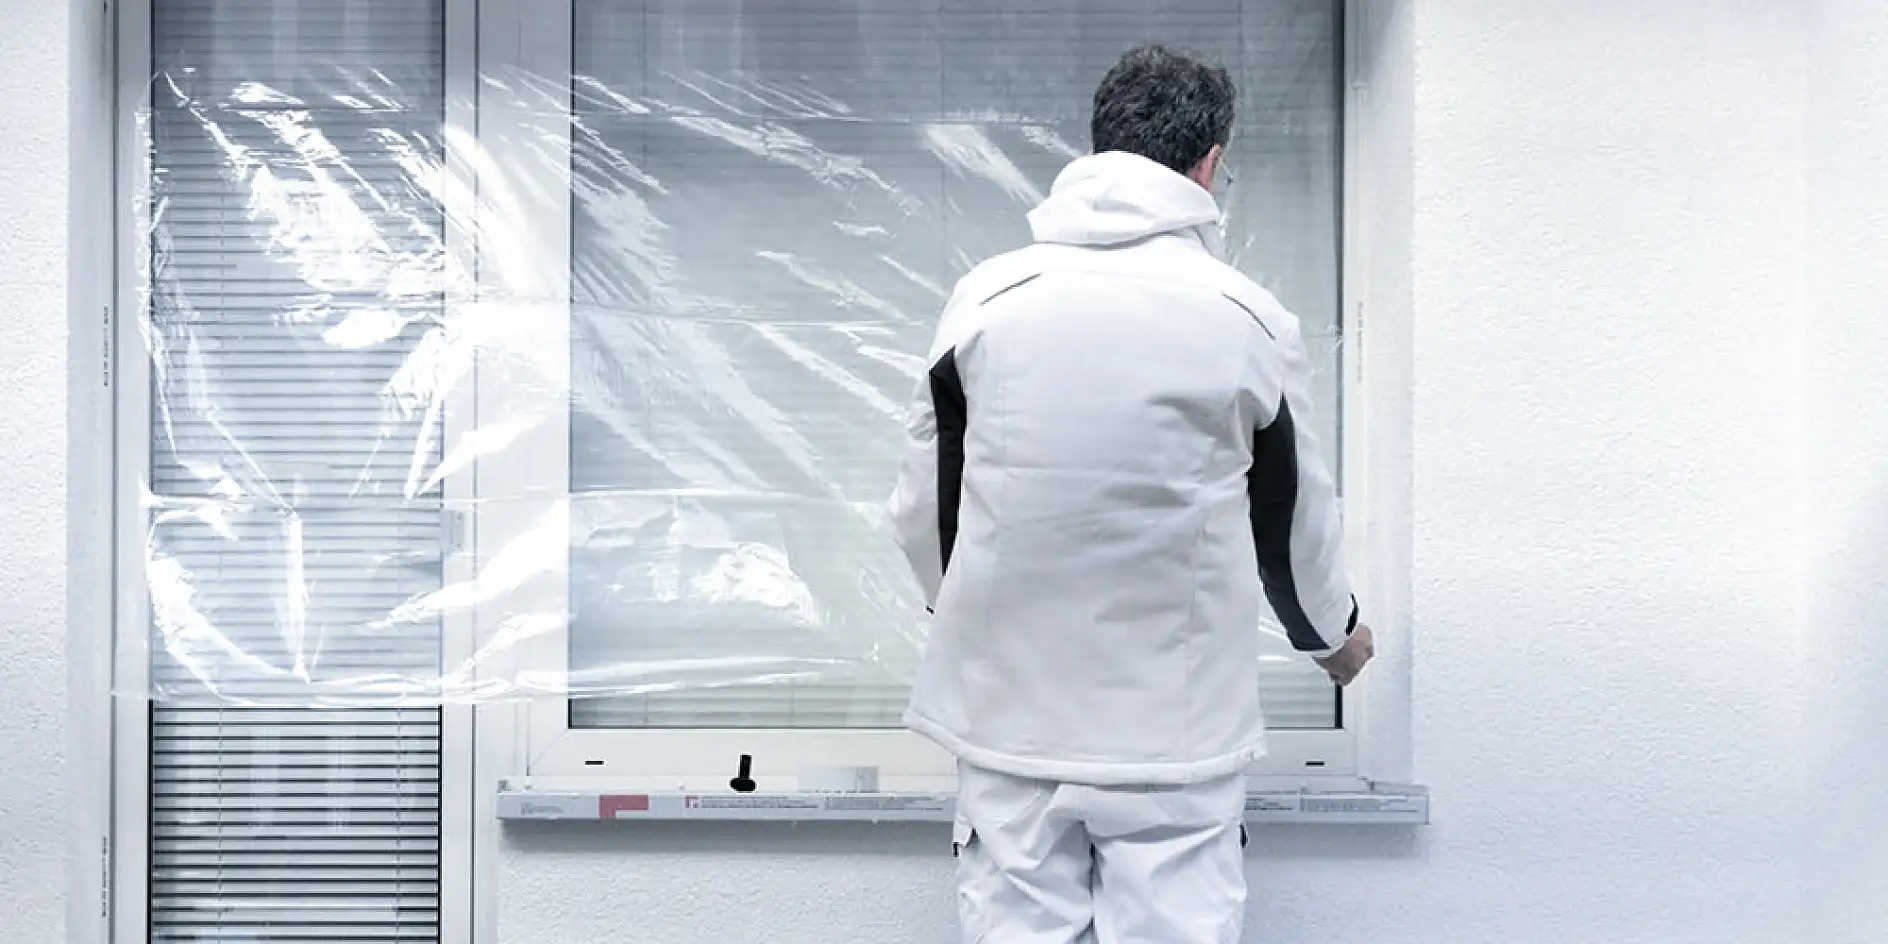 Fenster mit professionellen Abdeckprodukten für Handwerker von tesa® schützen